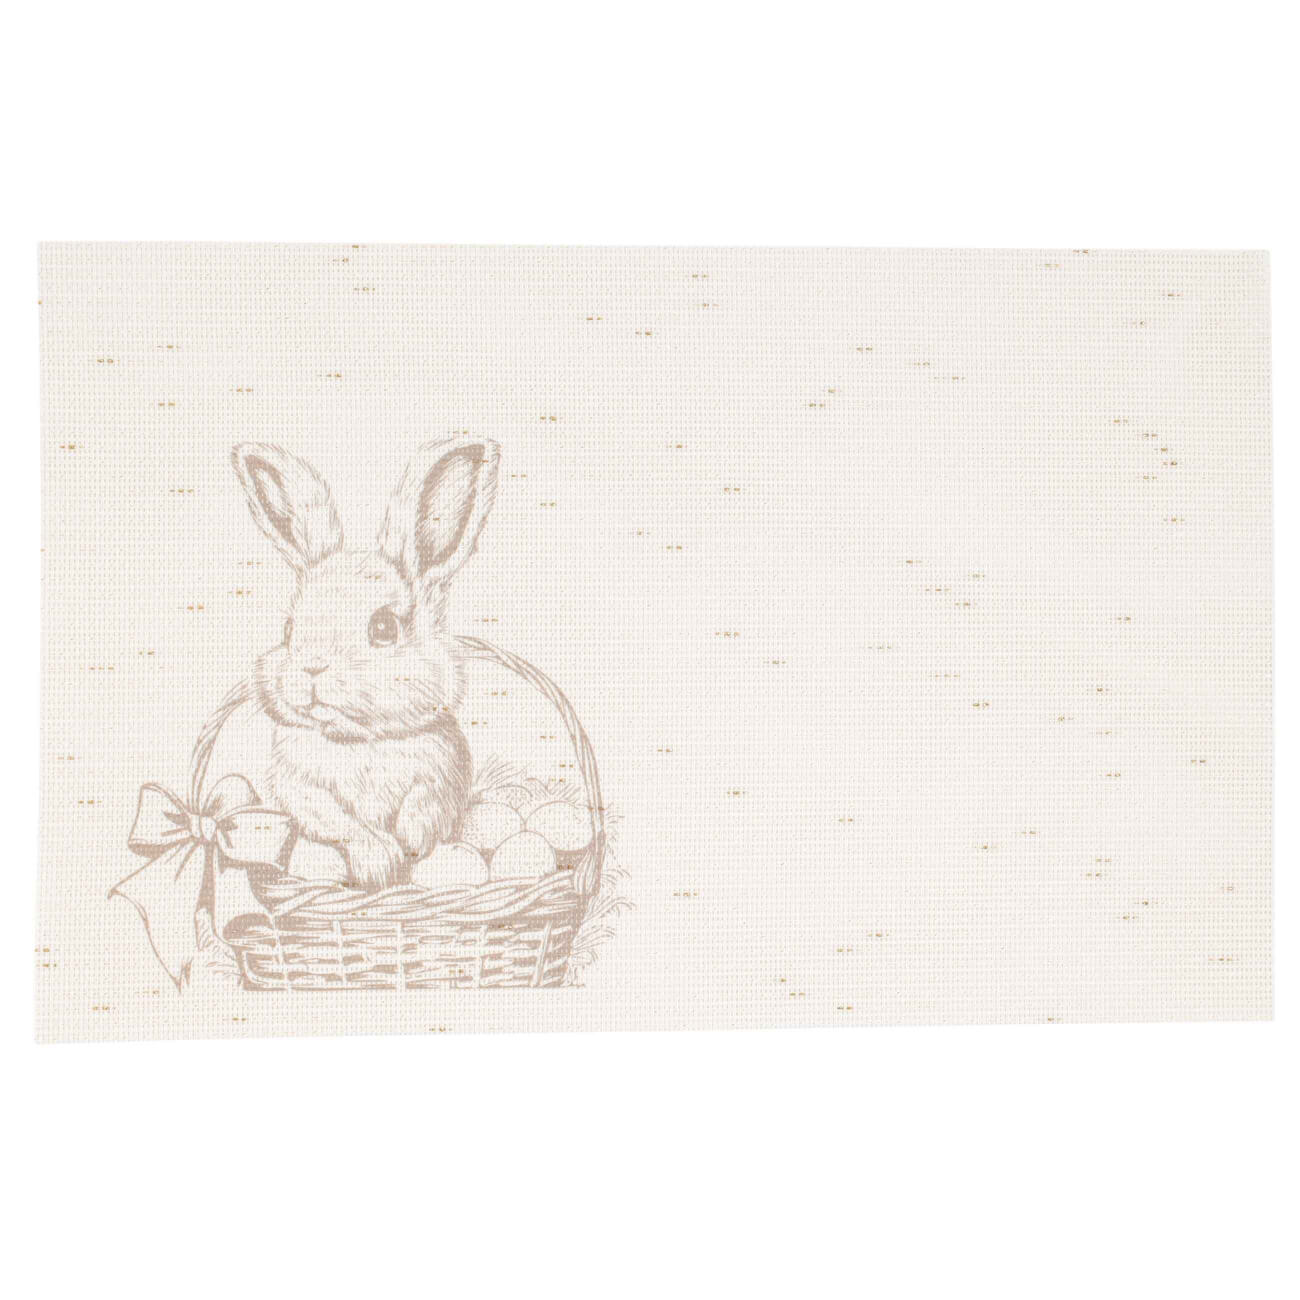 Салфетка под приборы, 30x45 см, ПВХ/полиэстер, прямоугольная, бежевая, Кролик, Solid print игрушка 20 см мягкая с подвижными лапами полиэстер белая кролик rabbit toy